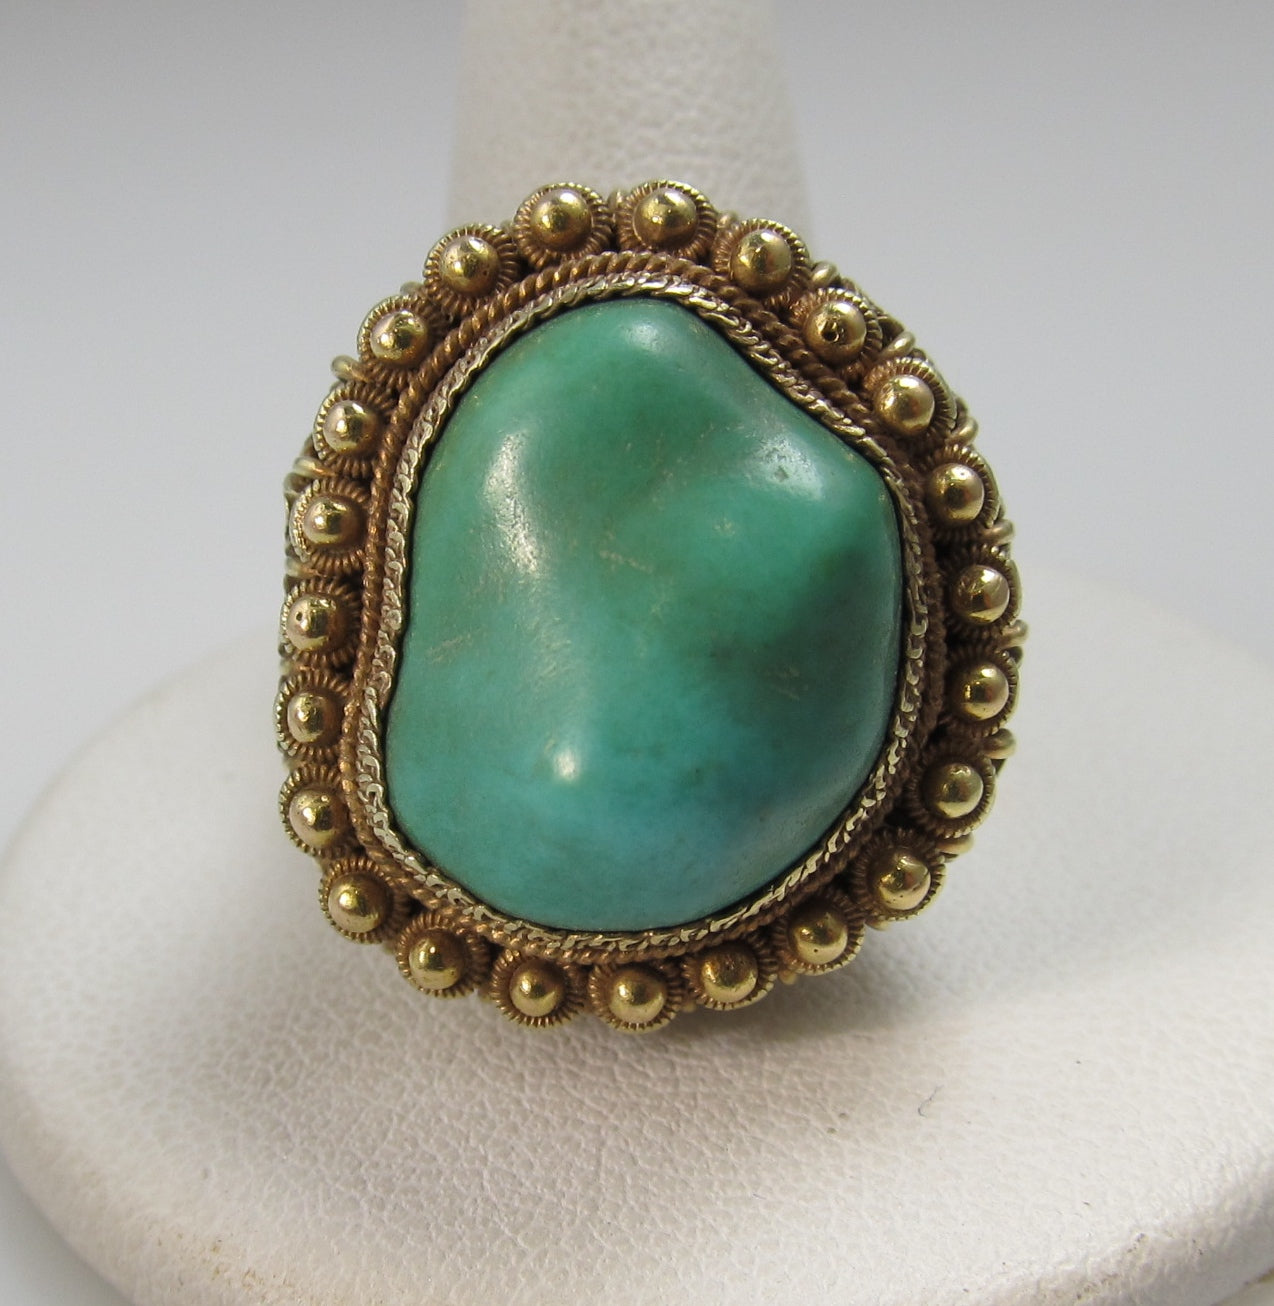 Vintage Chinese 14k Yellow Gold Filigree Turquoise Ring, Circa 1920